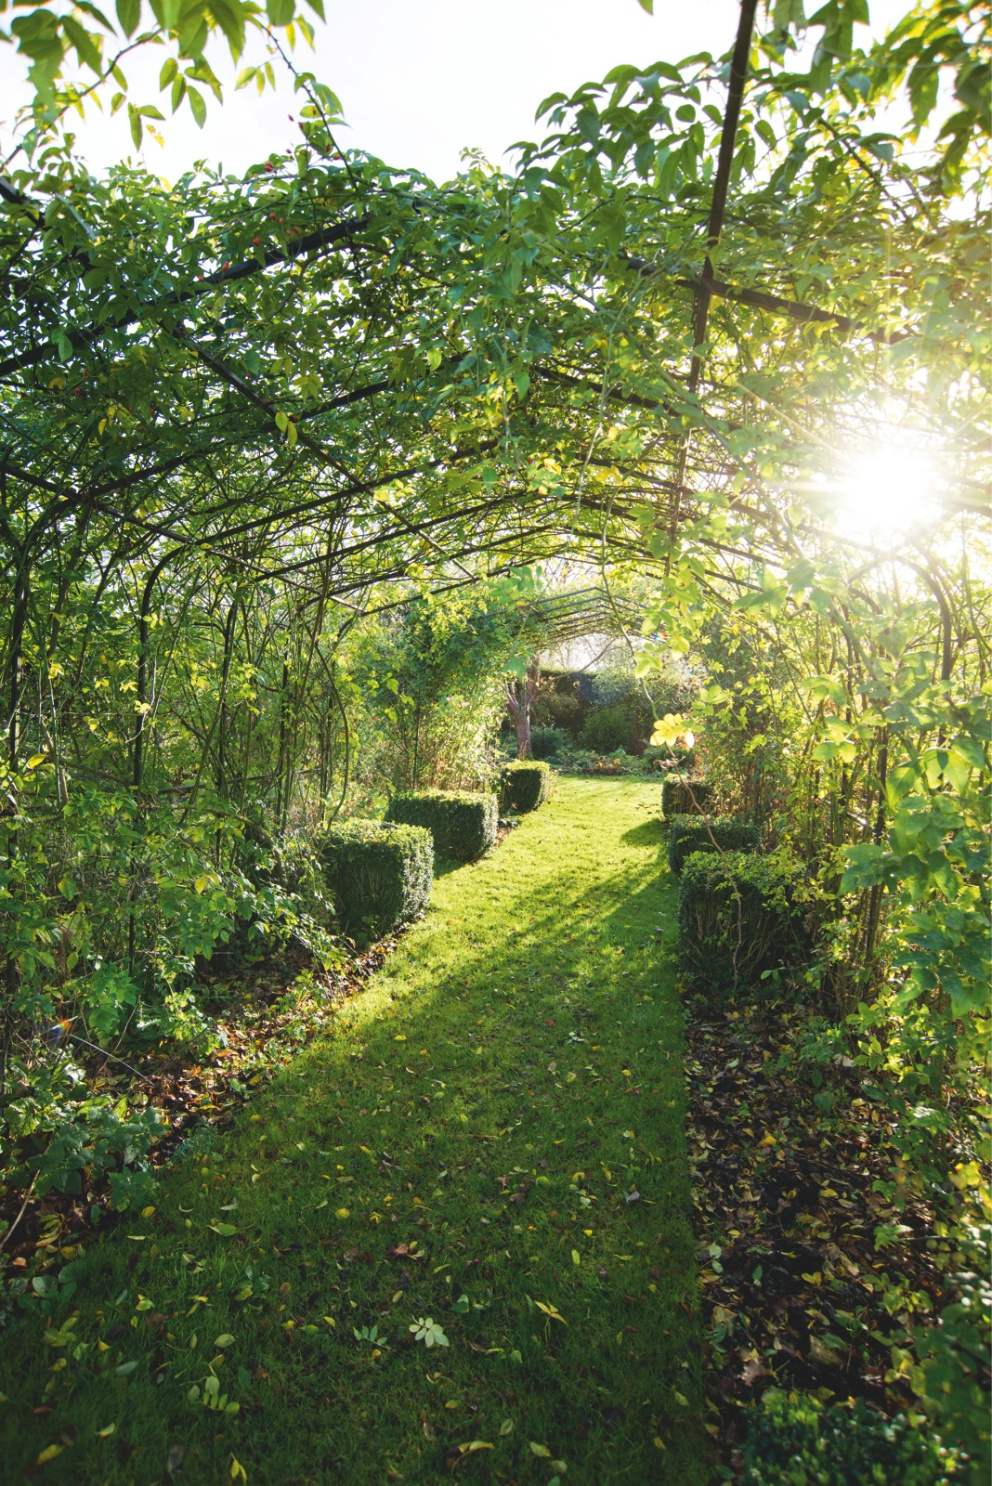 Průhled – typický prvek pro anglickou zahradu